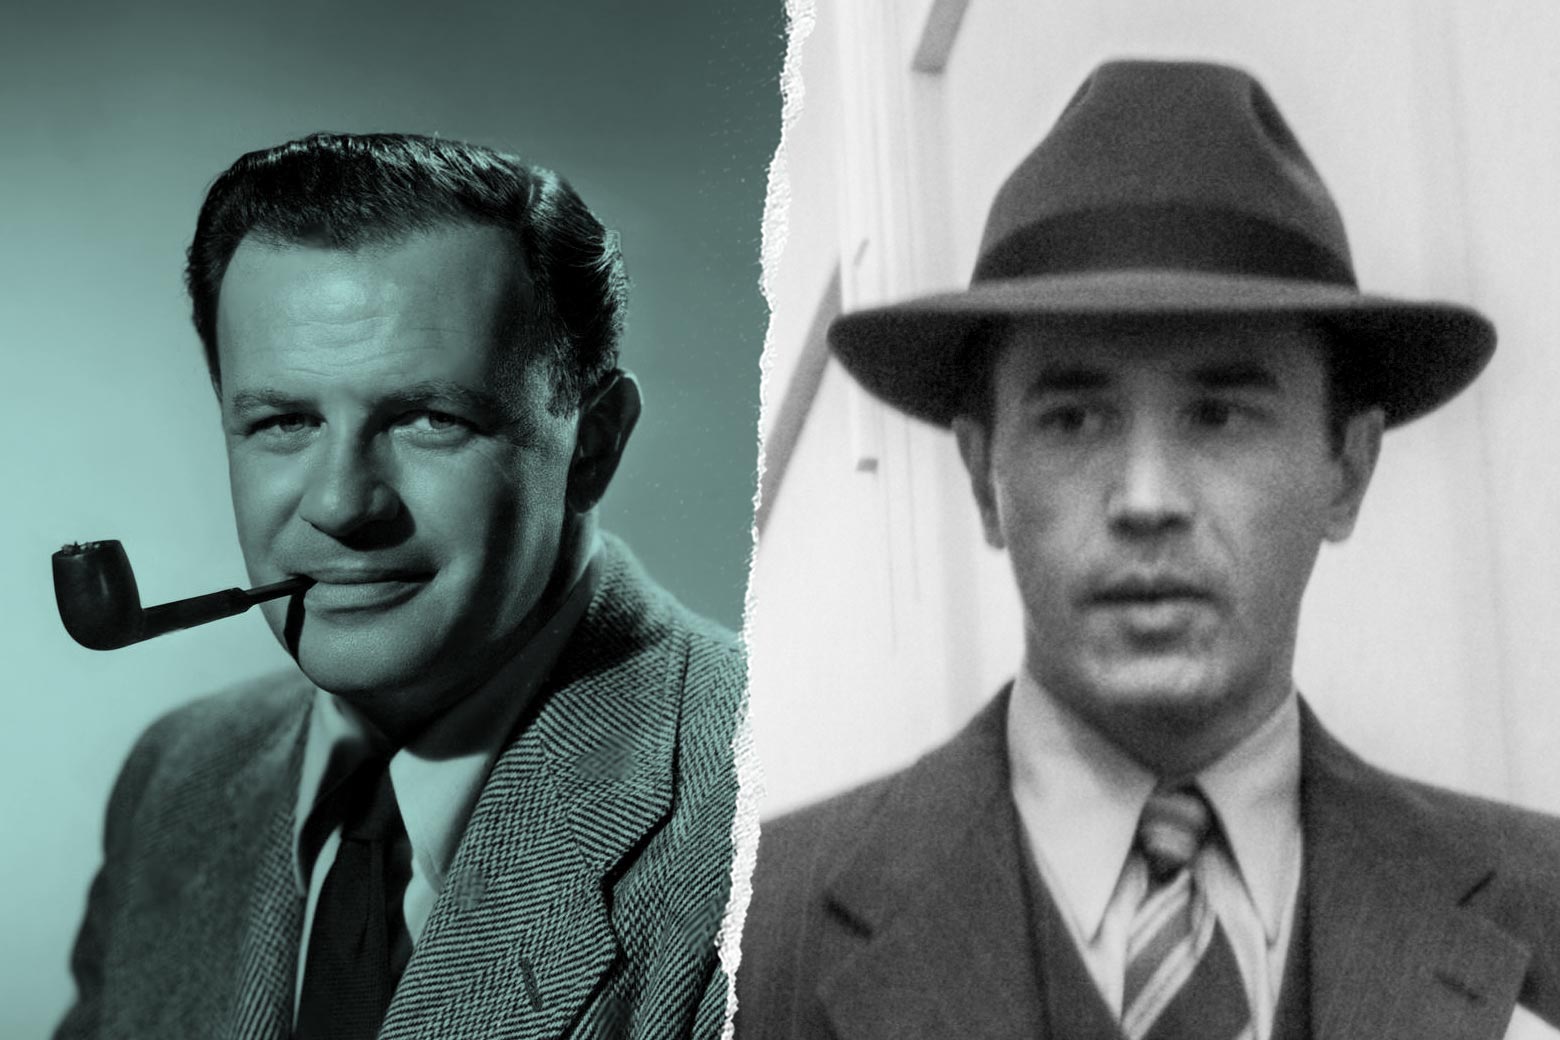 Joseph Mankiewicz, and Tom Pelphrey as Joseph Mankiewicz in Mank.